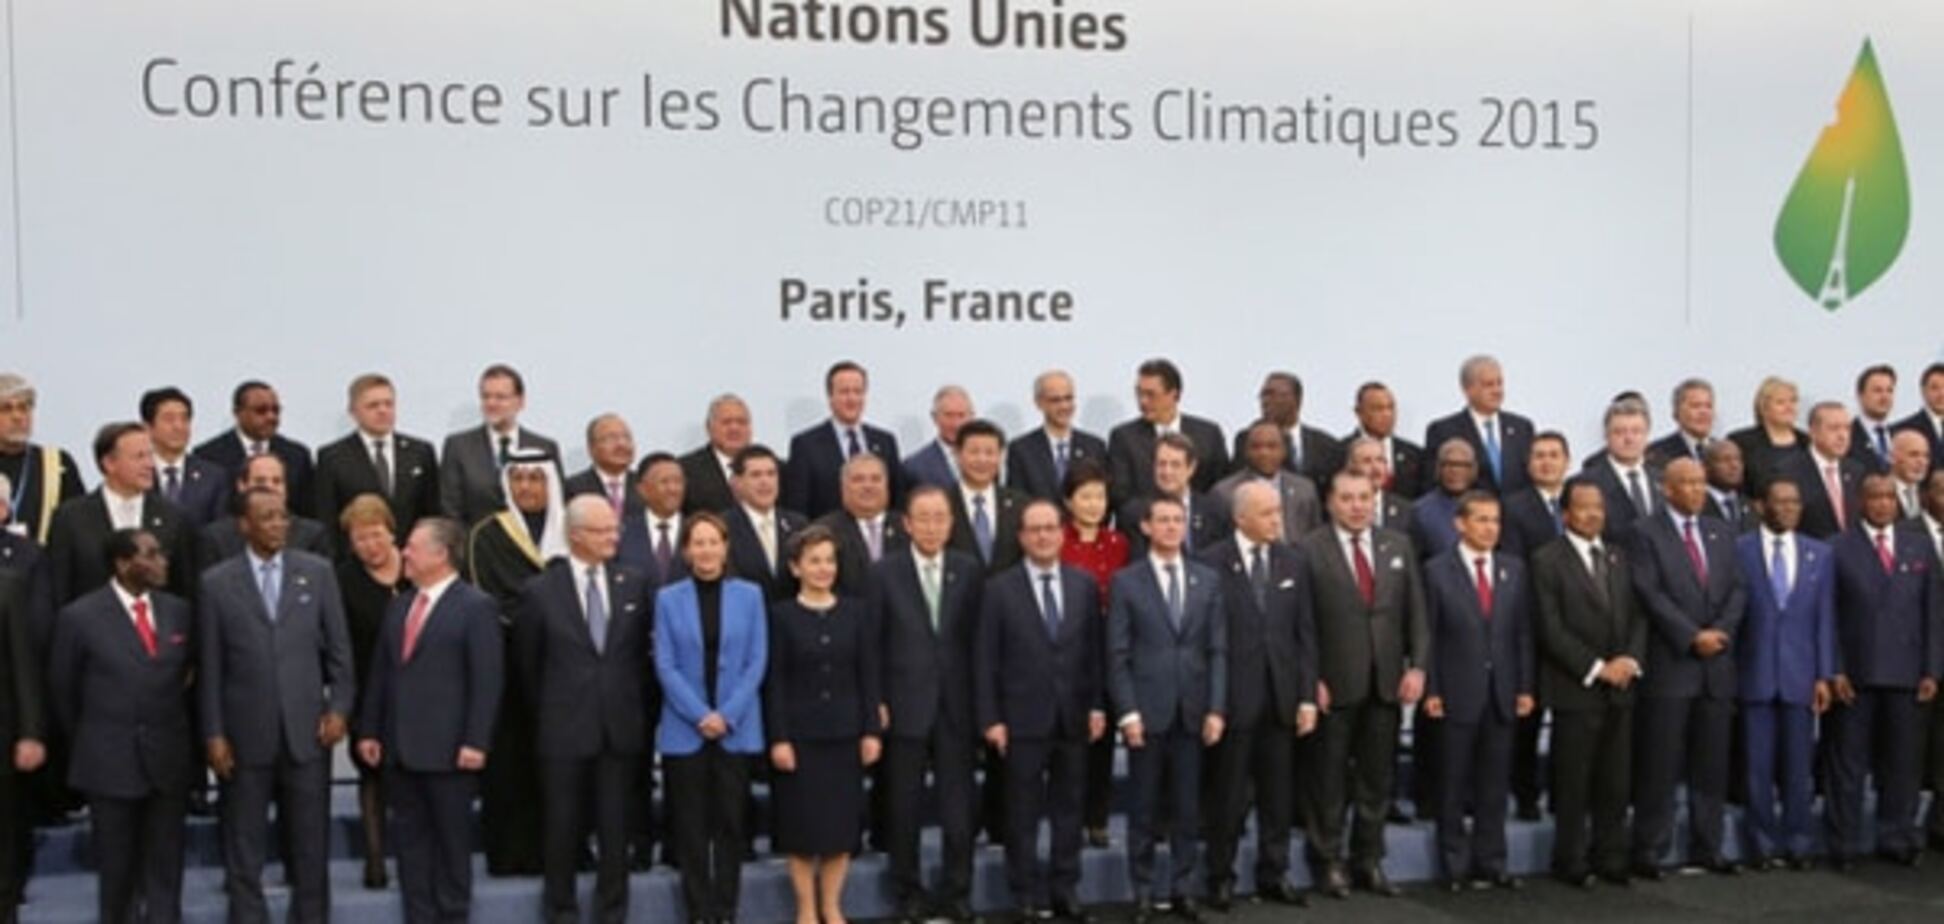 Щоб не псувати знімок: Путін не фотографувався на саміті ООН у Парижі